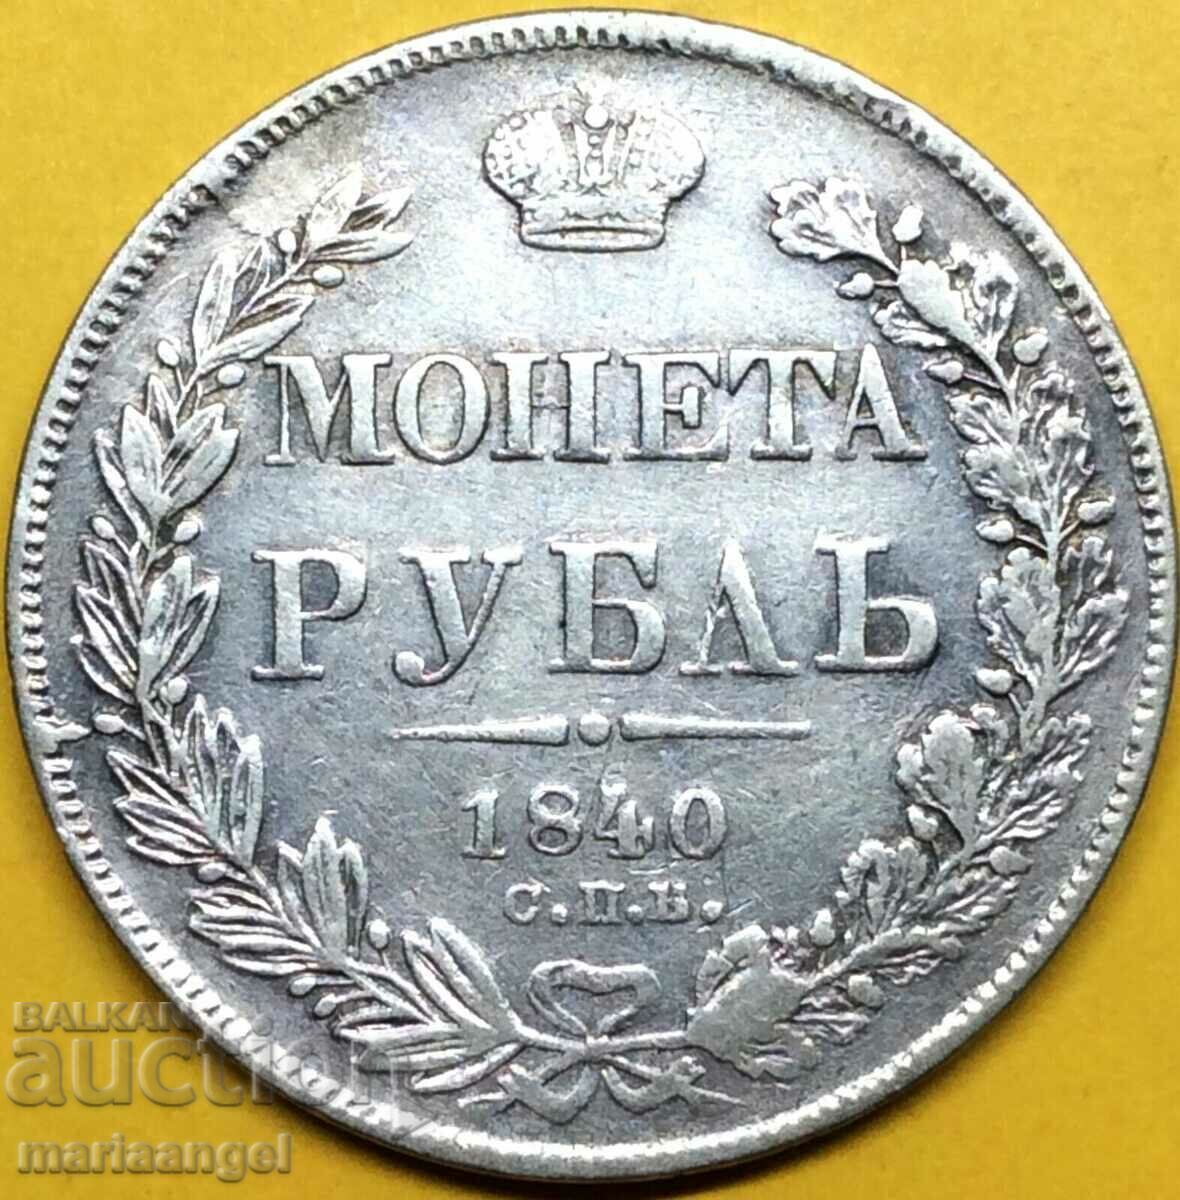 1 ruble 1840 Russia Nicholas I silver